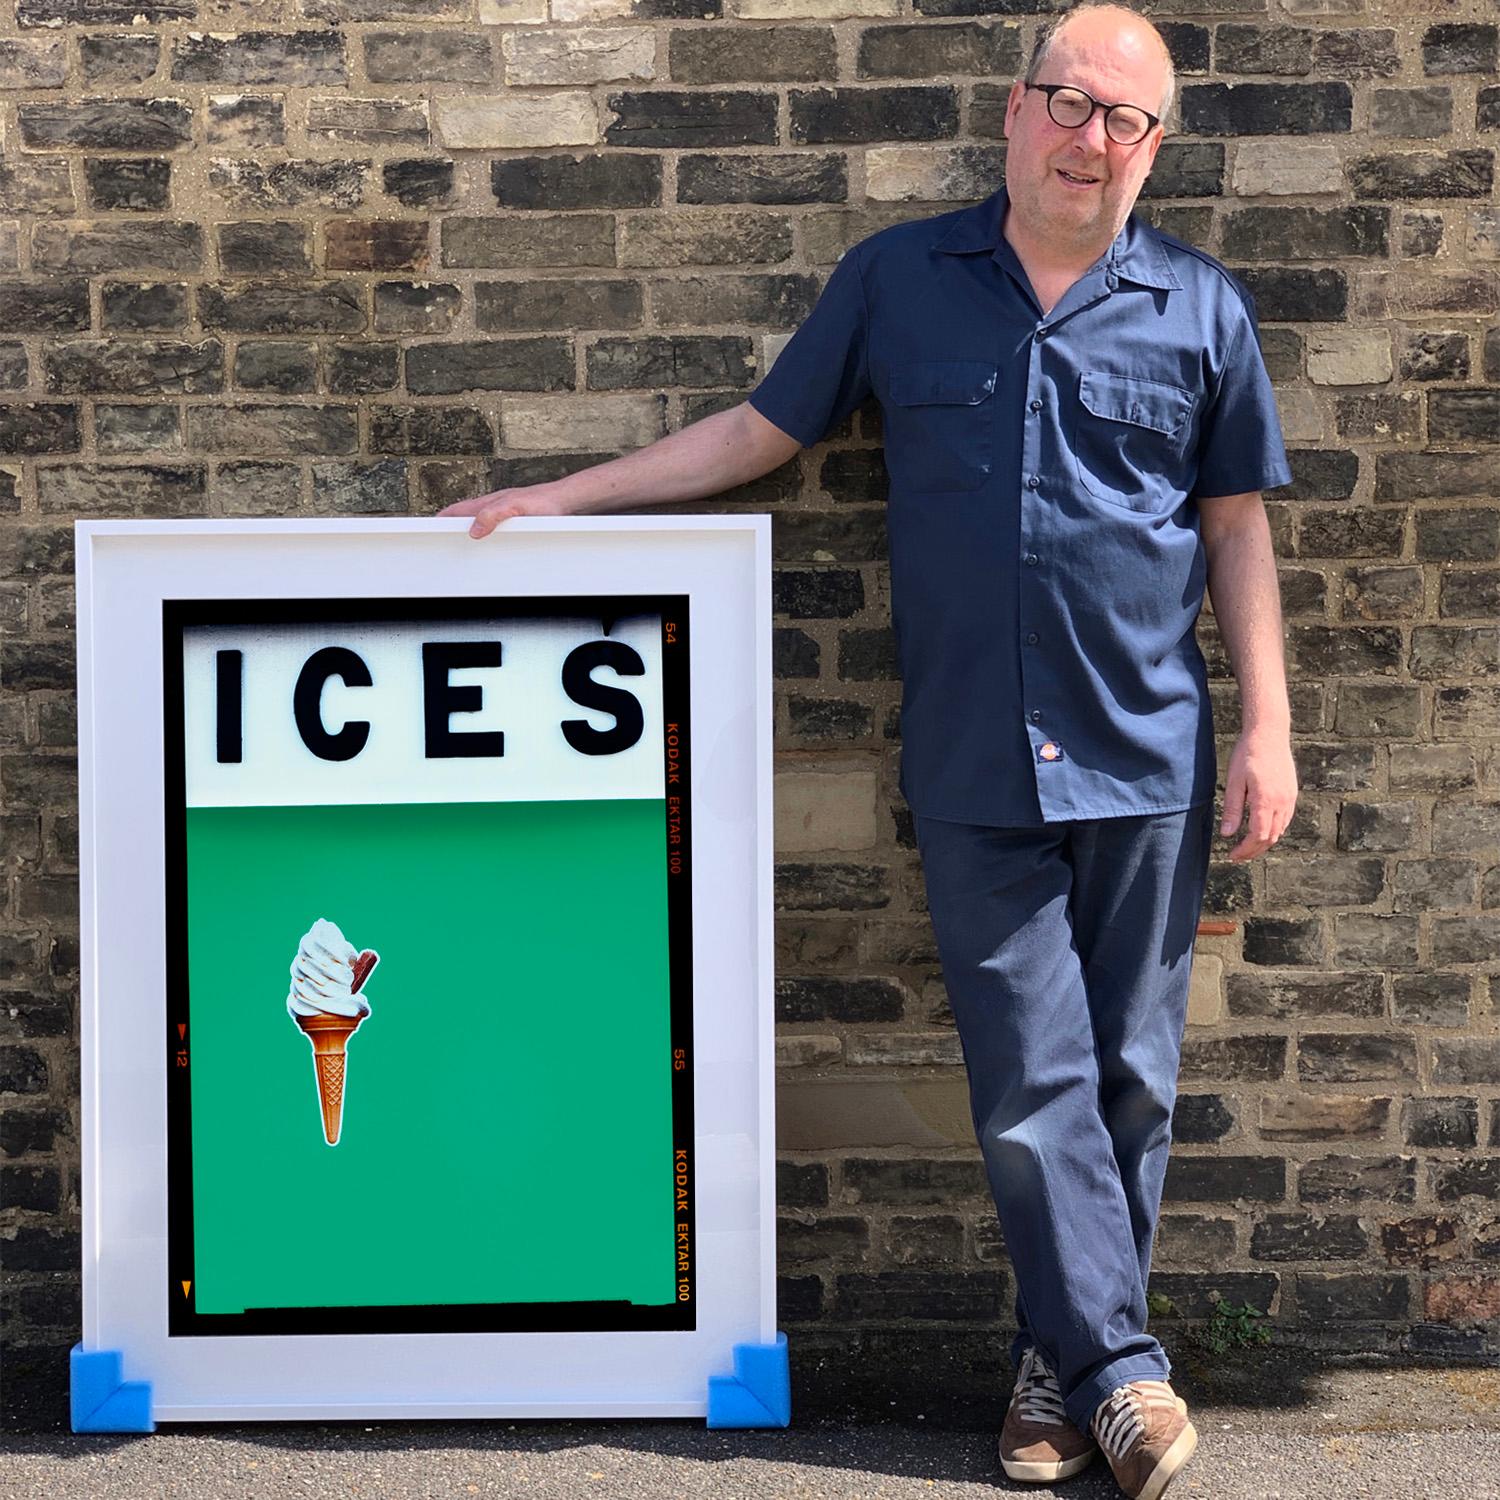 ICES, von Richard Heeps, fotografiert an der britischen Küste am Ende des Sommers 2020. Bei diesem Kunstwerk geht es darum, Erinnerungen an die einfache Freude von Tagen am Strand zu wecken. Die viridiangrüne Farbgebung, die Typografie und die